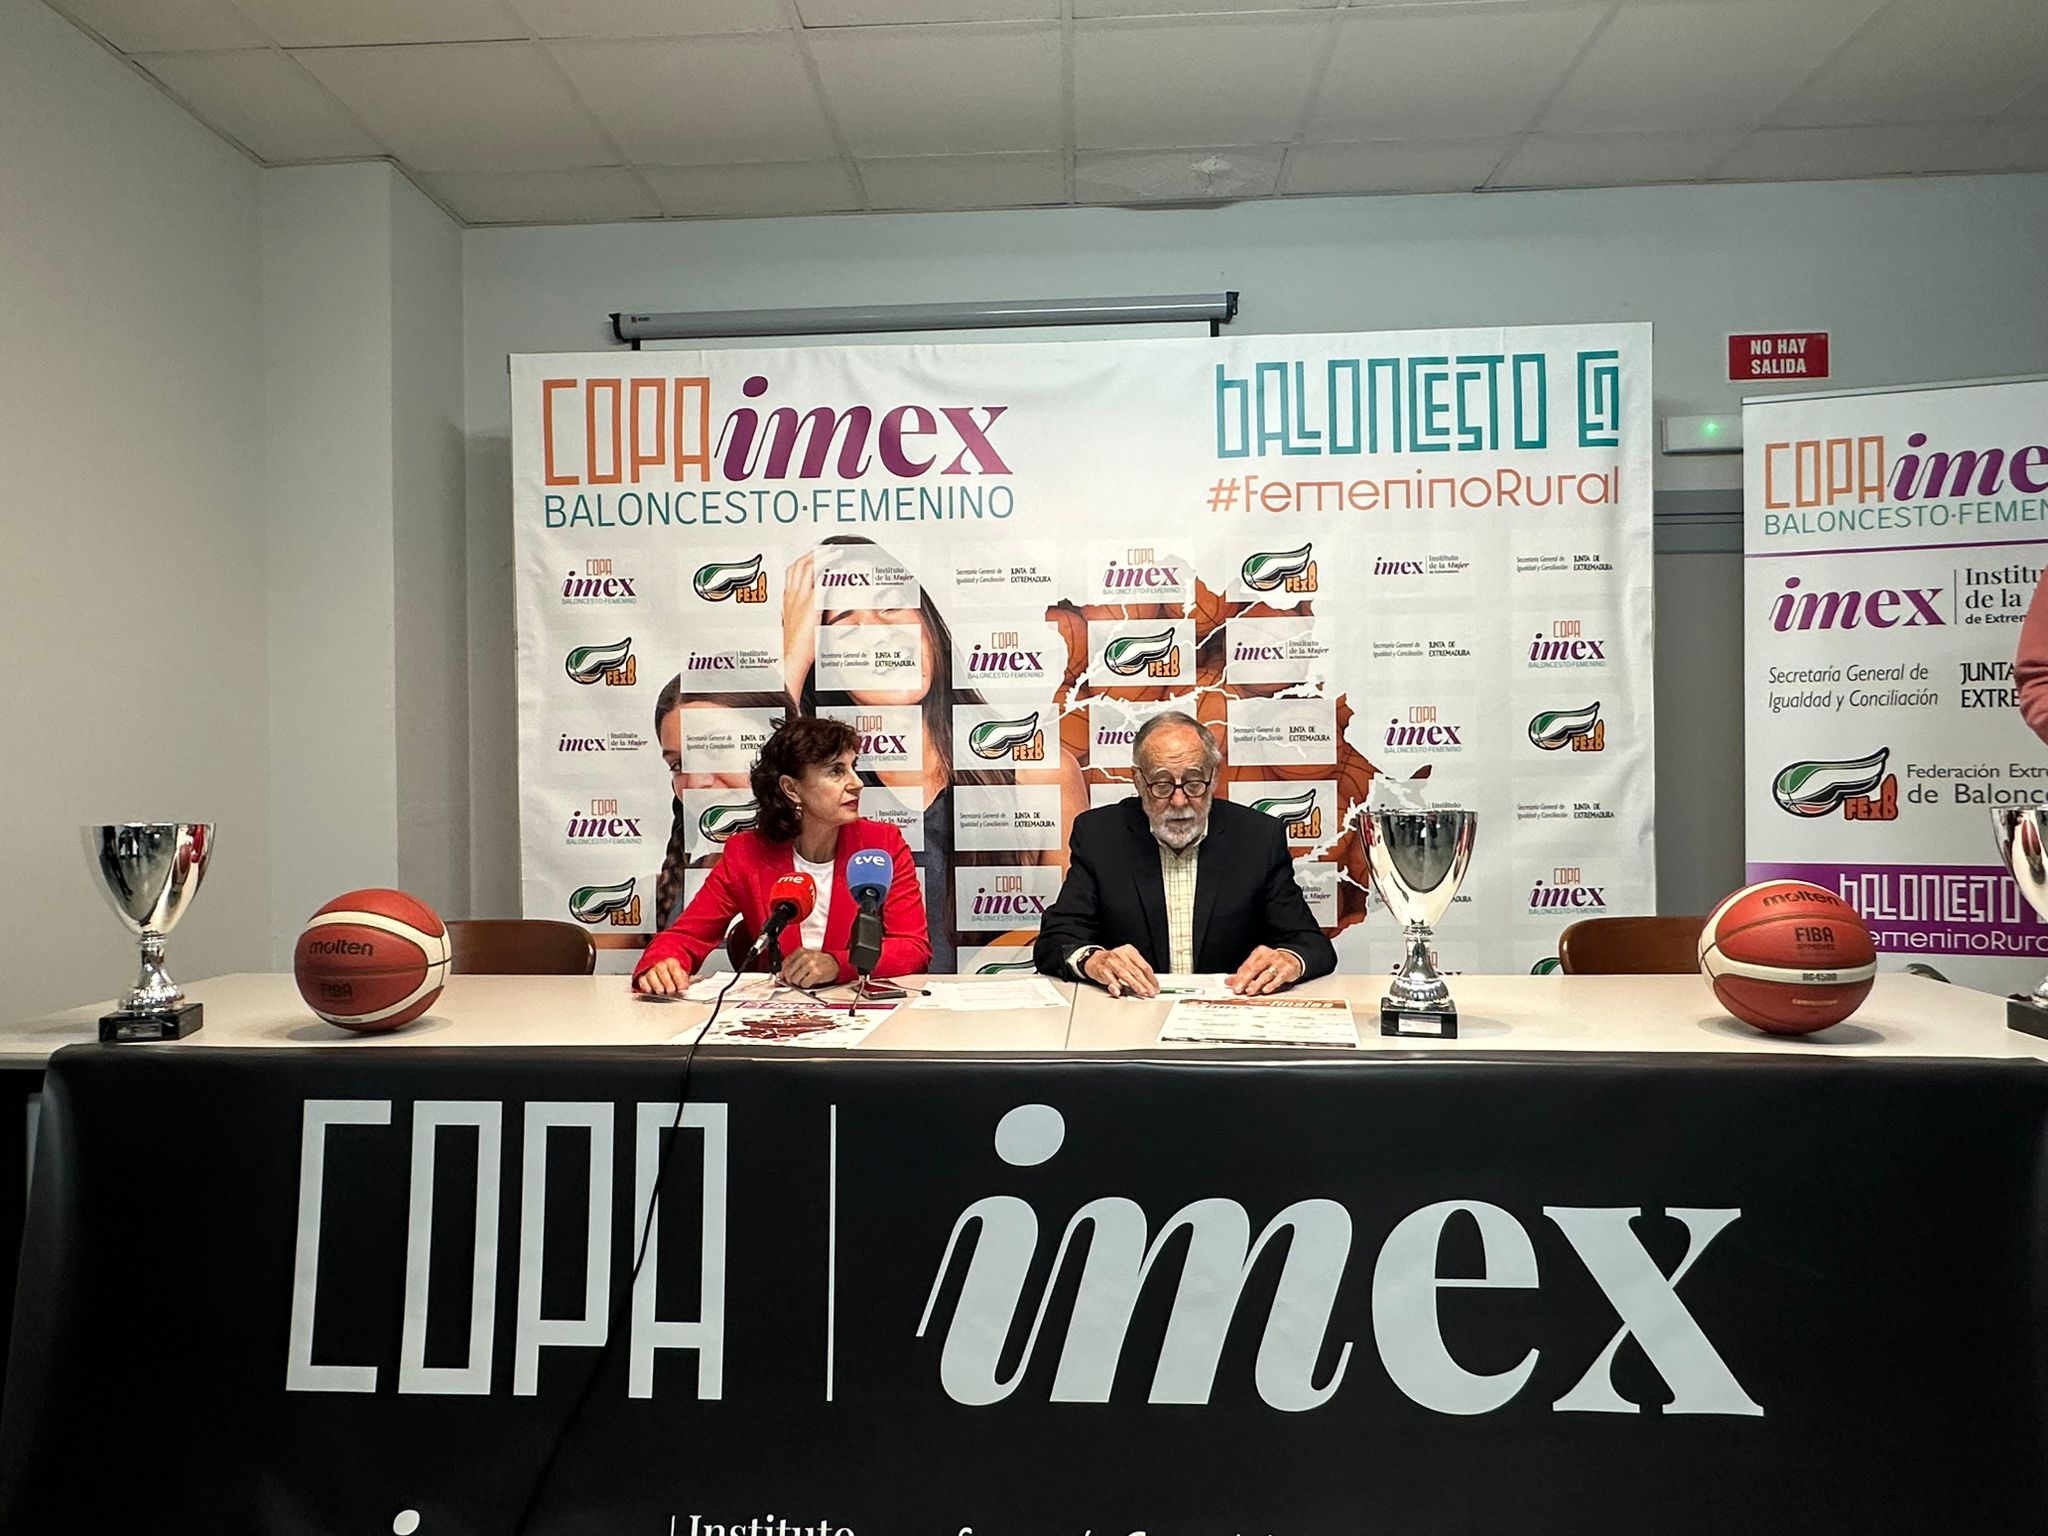 Image 2 of article Un total de 336 niñas y jóvenes han participado en la I Copa IMEX de Baloncesto, creada para evitar el abandono del deporte femenino